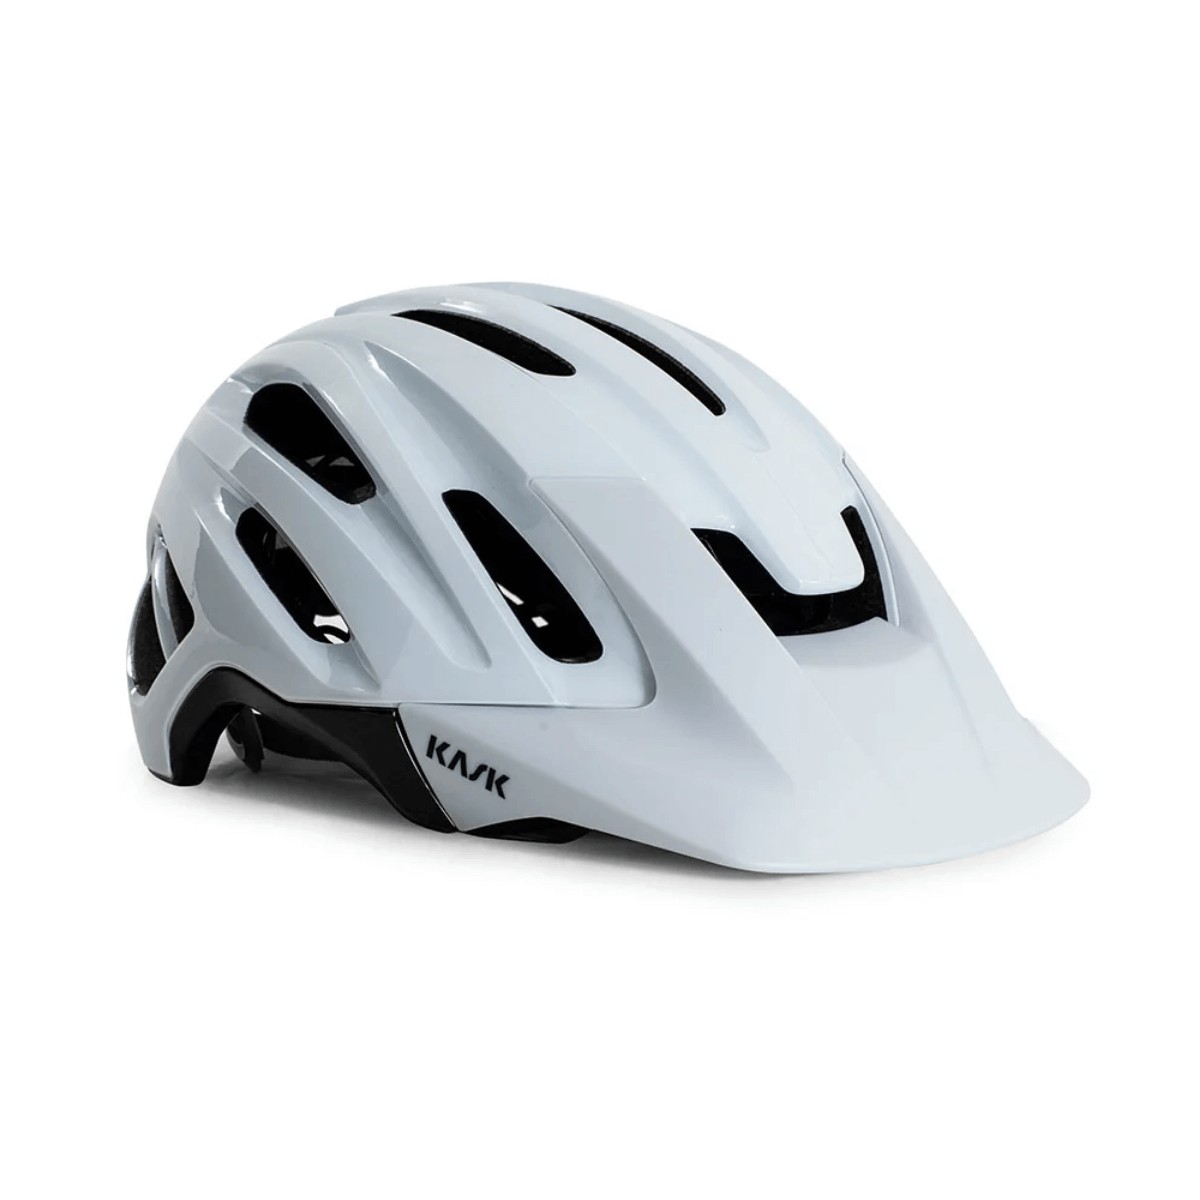 Kask Caipi White Helmet